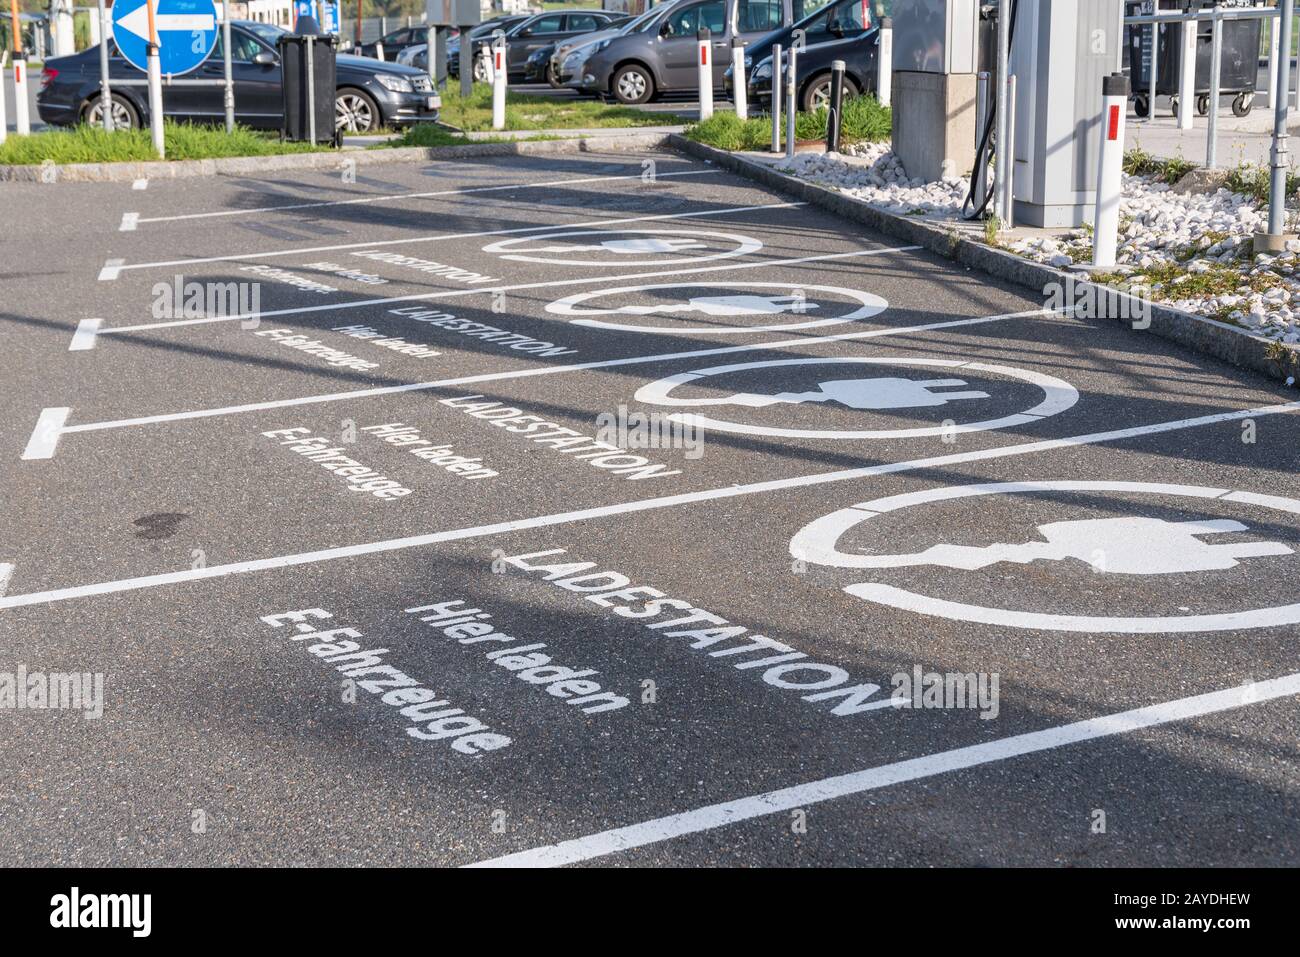 Parkplatz für Elektrofahrzeuge - Parkplatz für Elektroautos in der Nähe Stockfoto